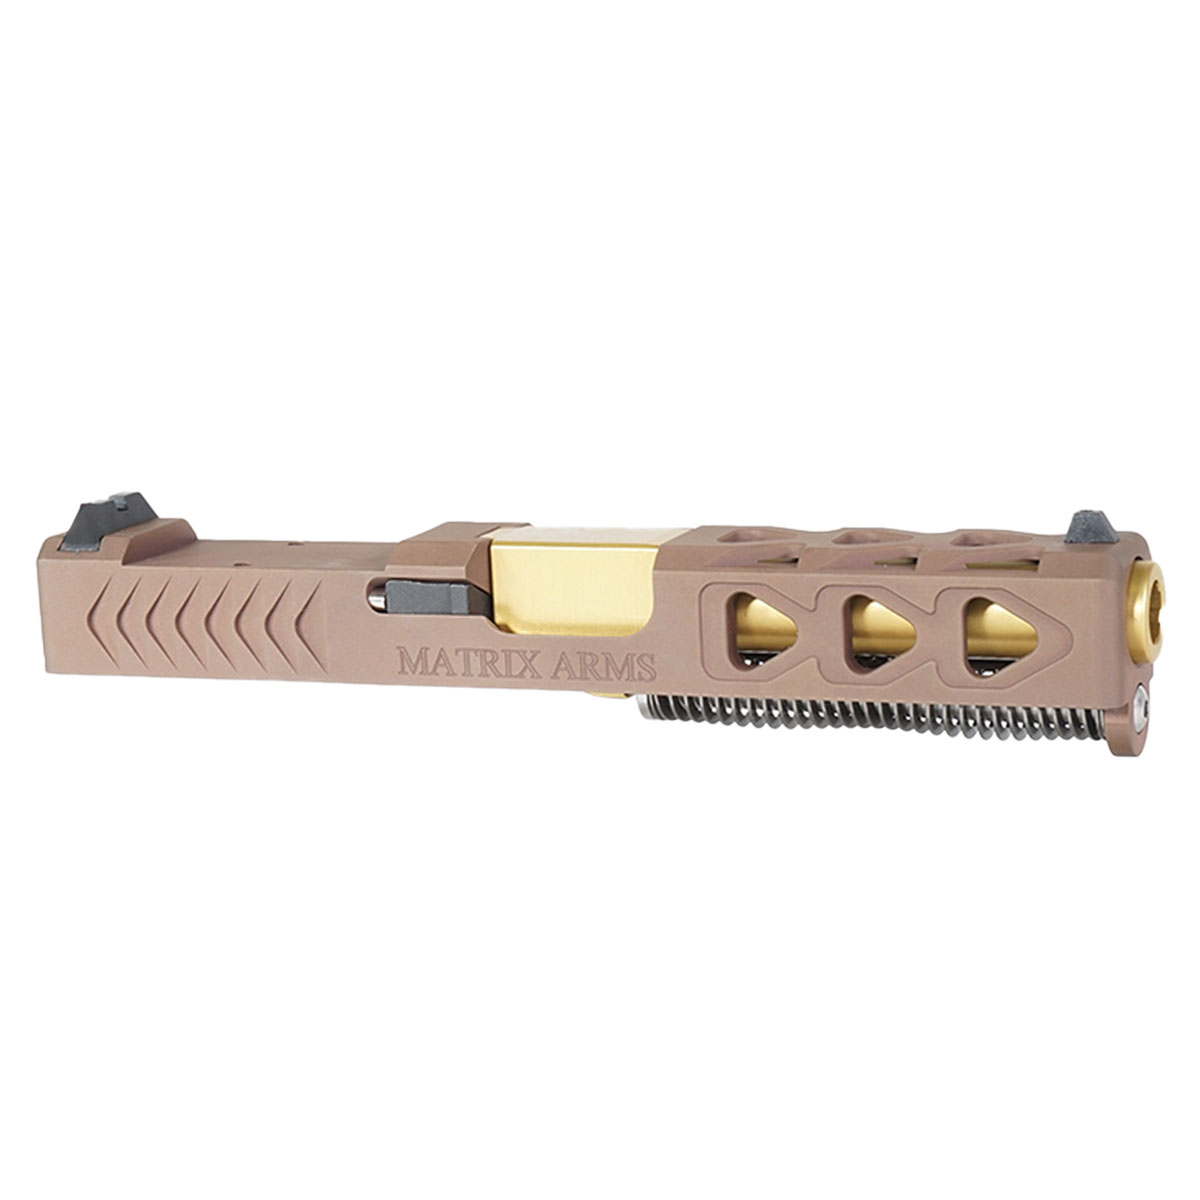 DD 'Bellator Nidum' 9mm Complete Slide Kit - Glock 19 Gen 1-3 Compatible